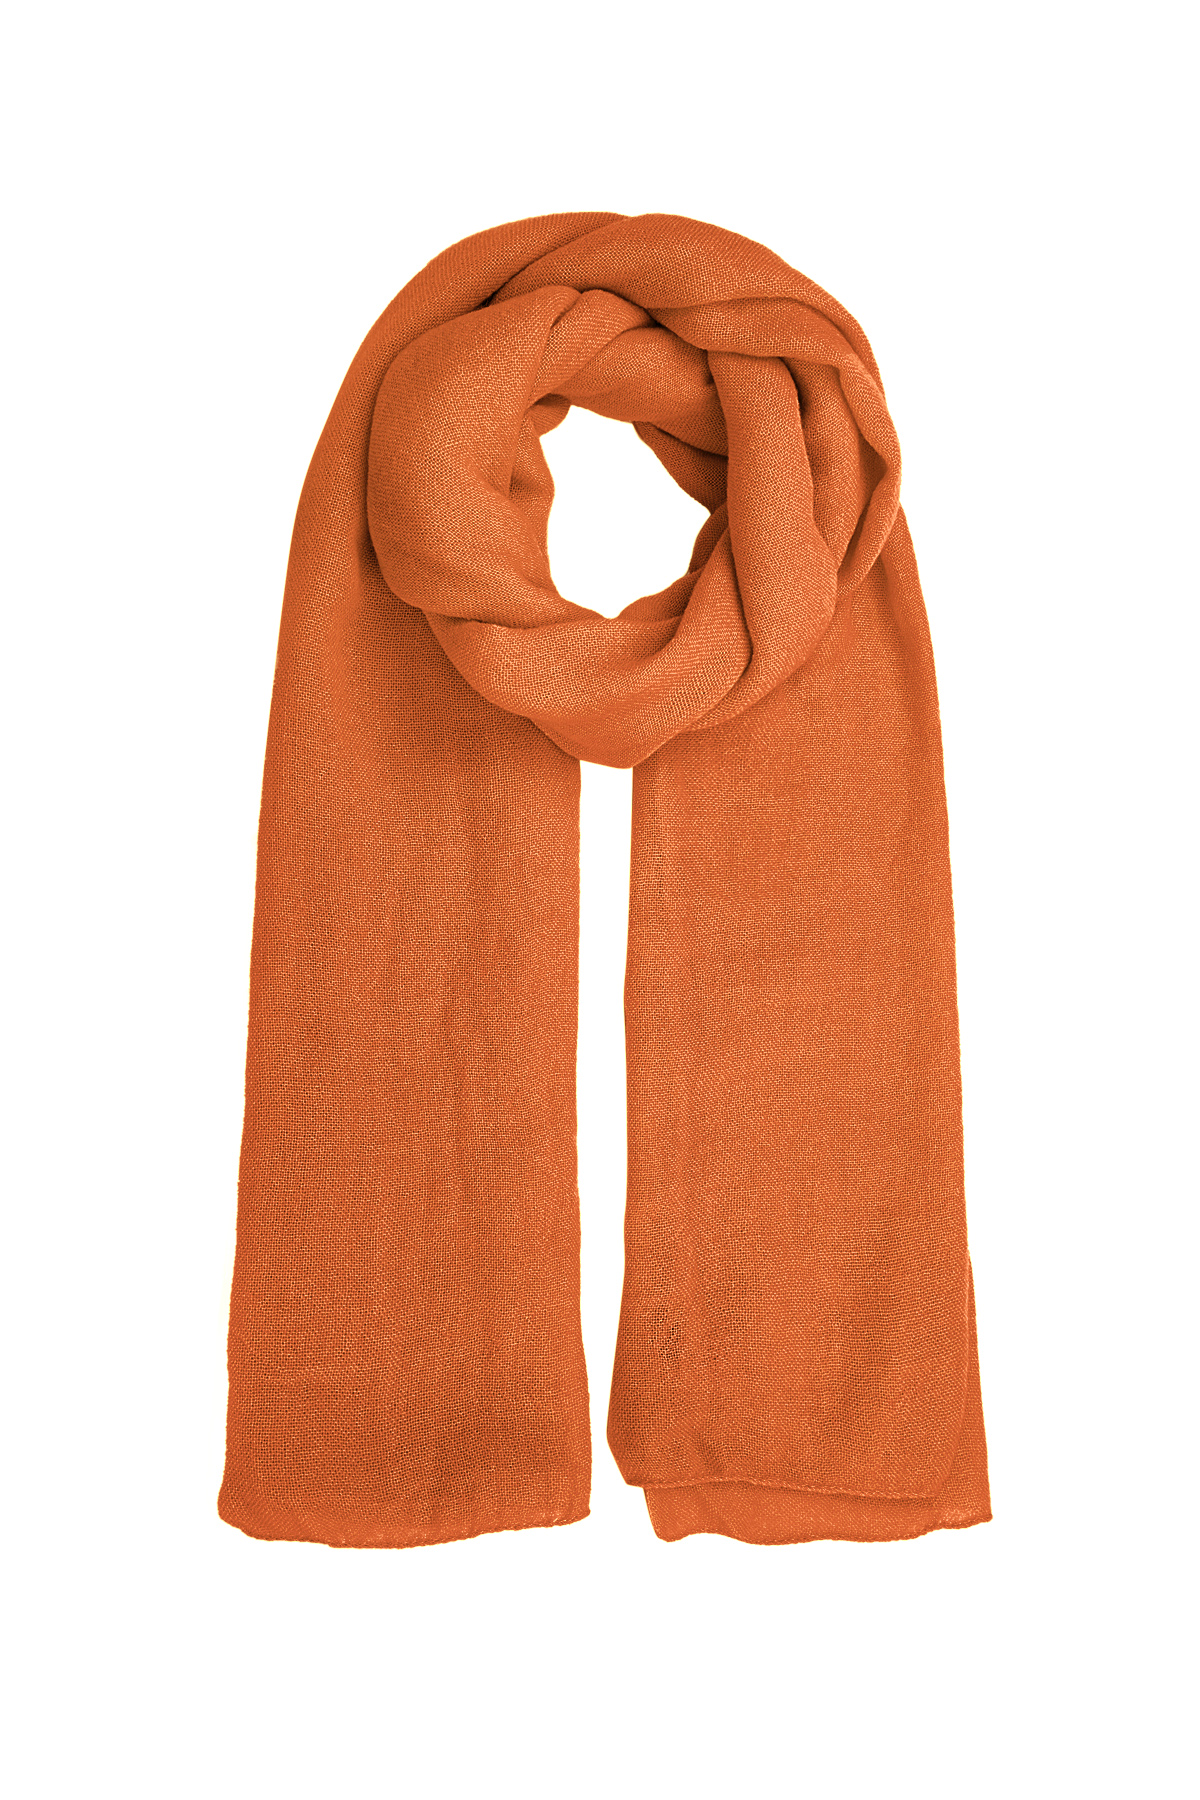 Sjaal effen kleur - oranje 